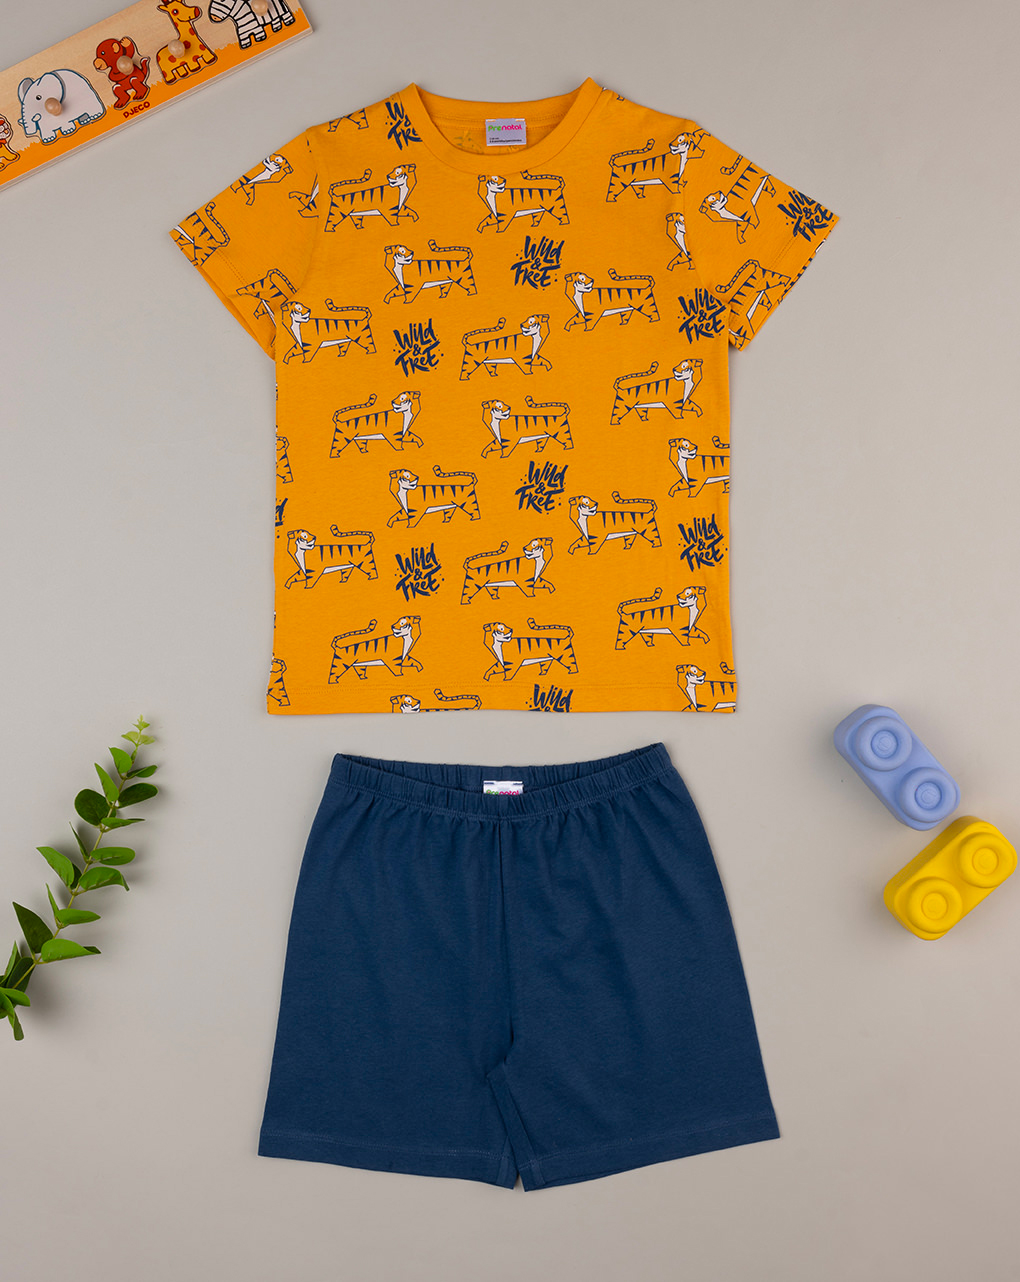 παιδική πιτζάμα πορτοκαλί/μπλε με τίγρεις για αγόρι